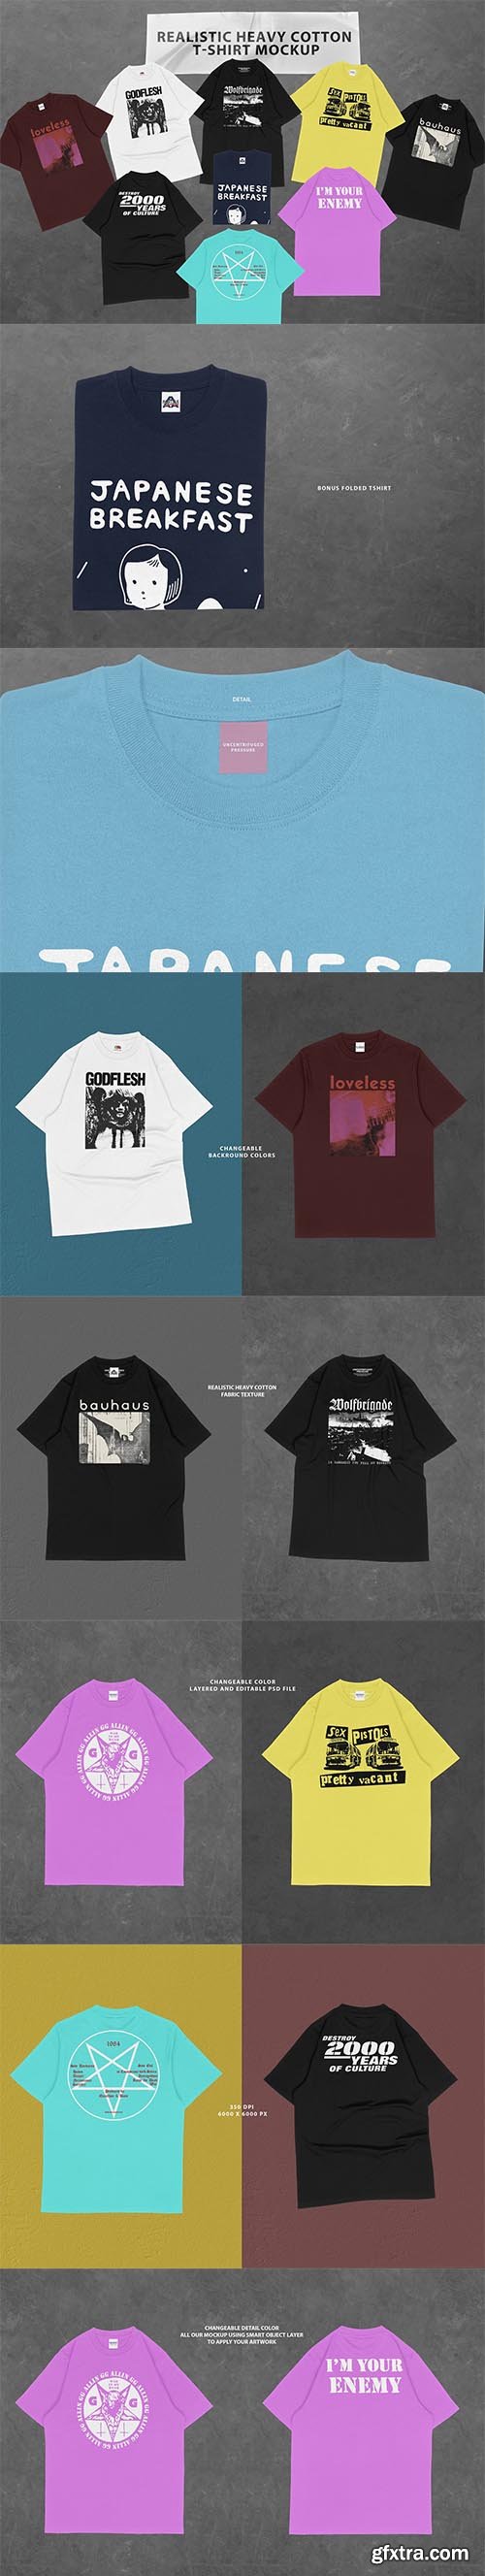 CreativeMarket - Heavy Cotton T-shirt Mockup 6578295